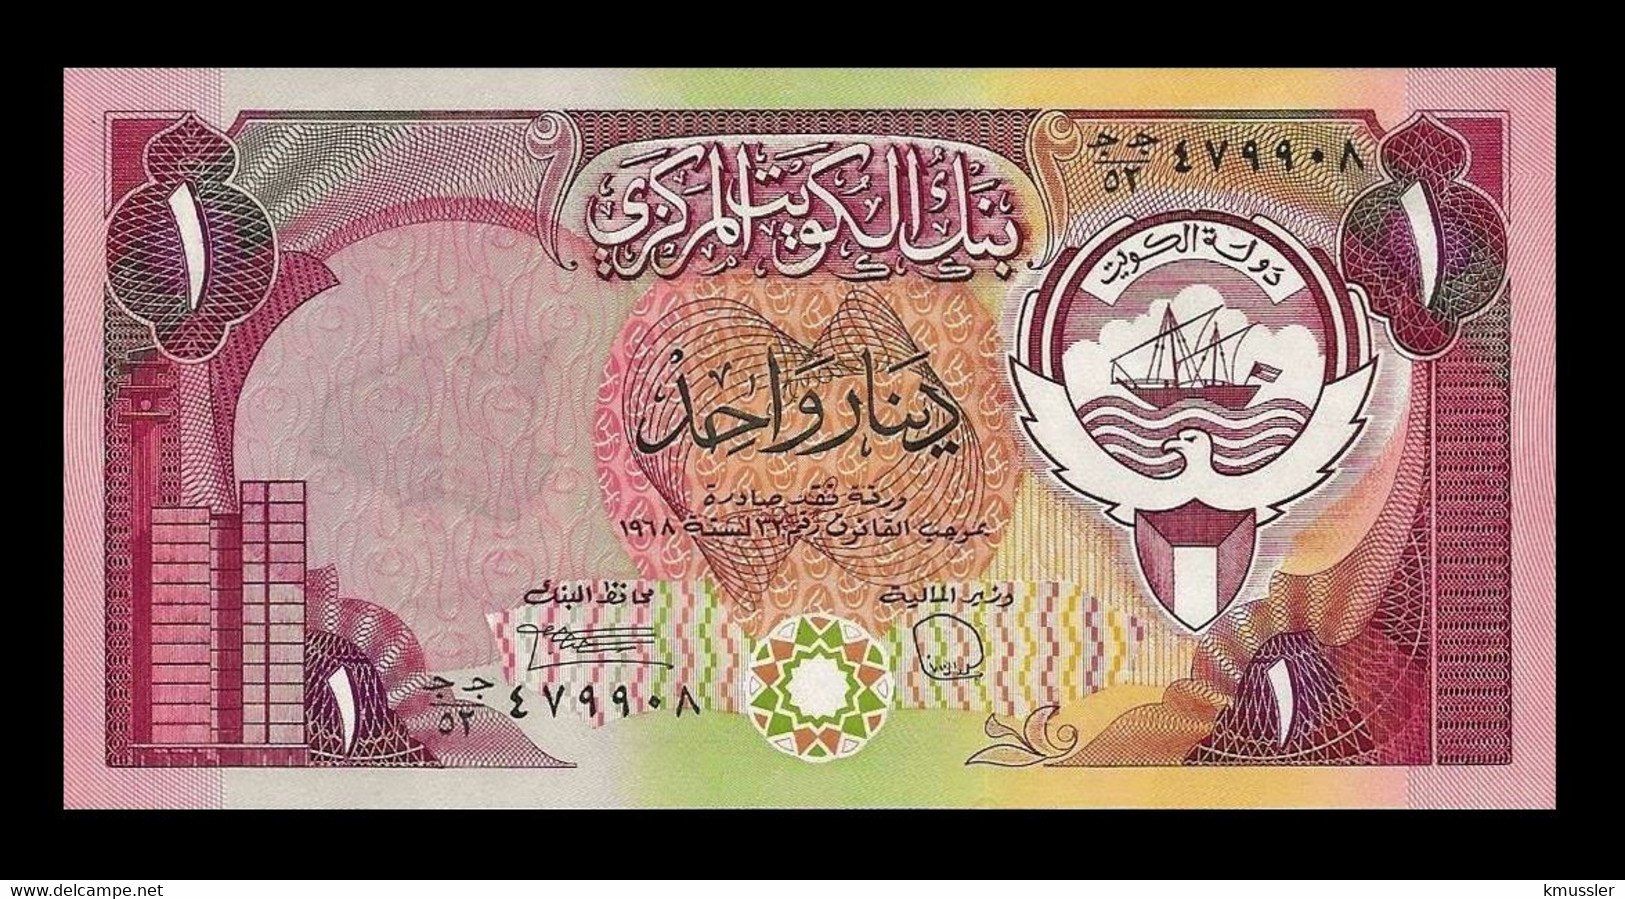 # # # Banknote Aus Kuwait 1 Dinar 1968 UNC # # # - Kuwait